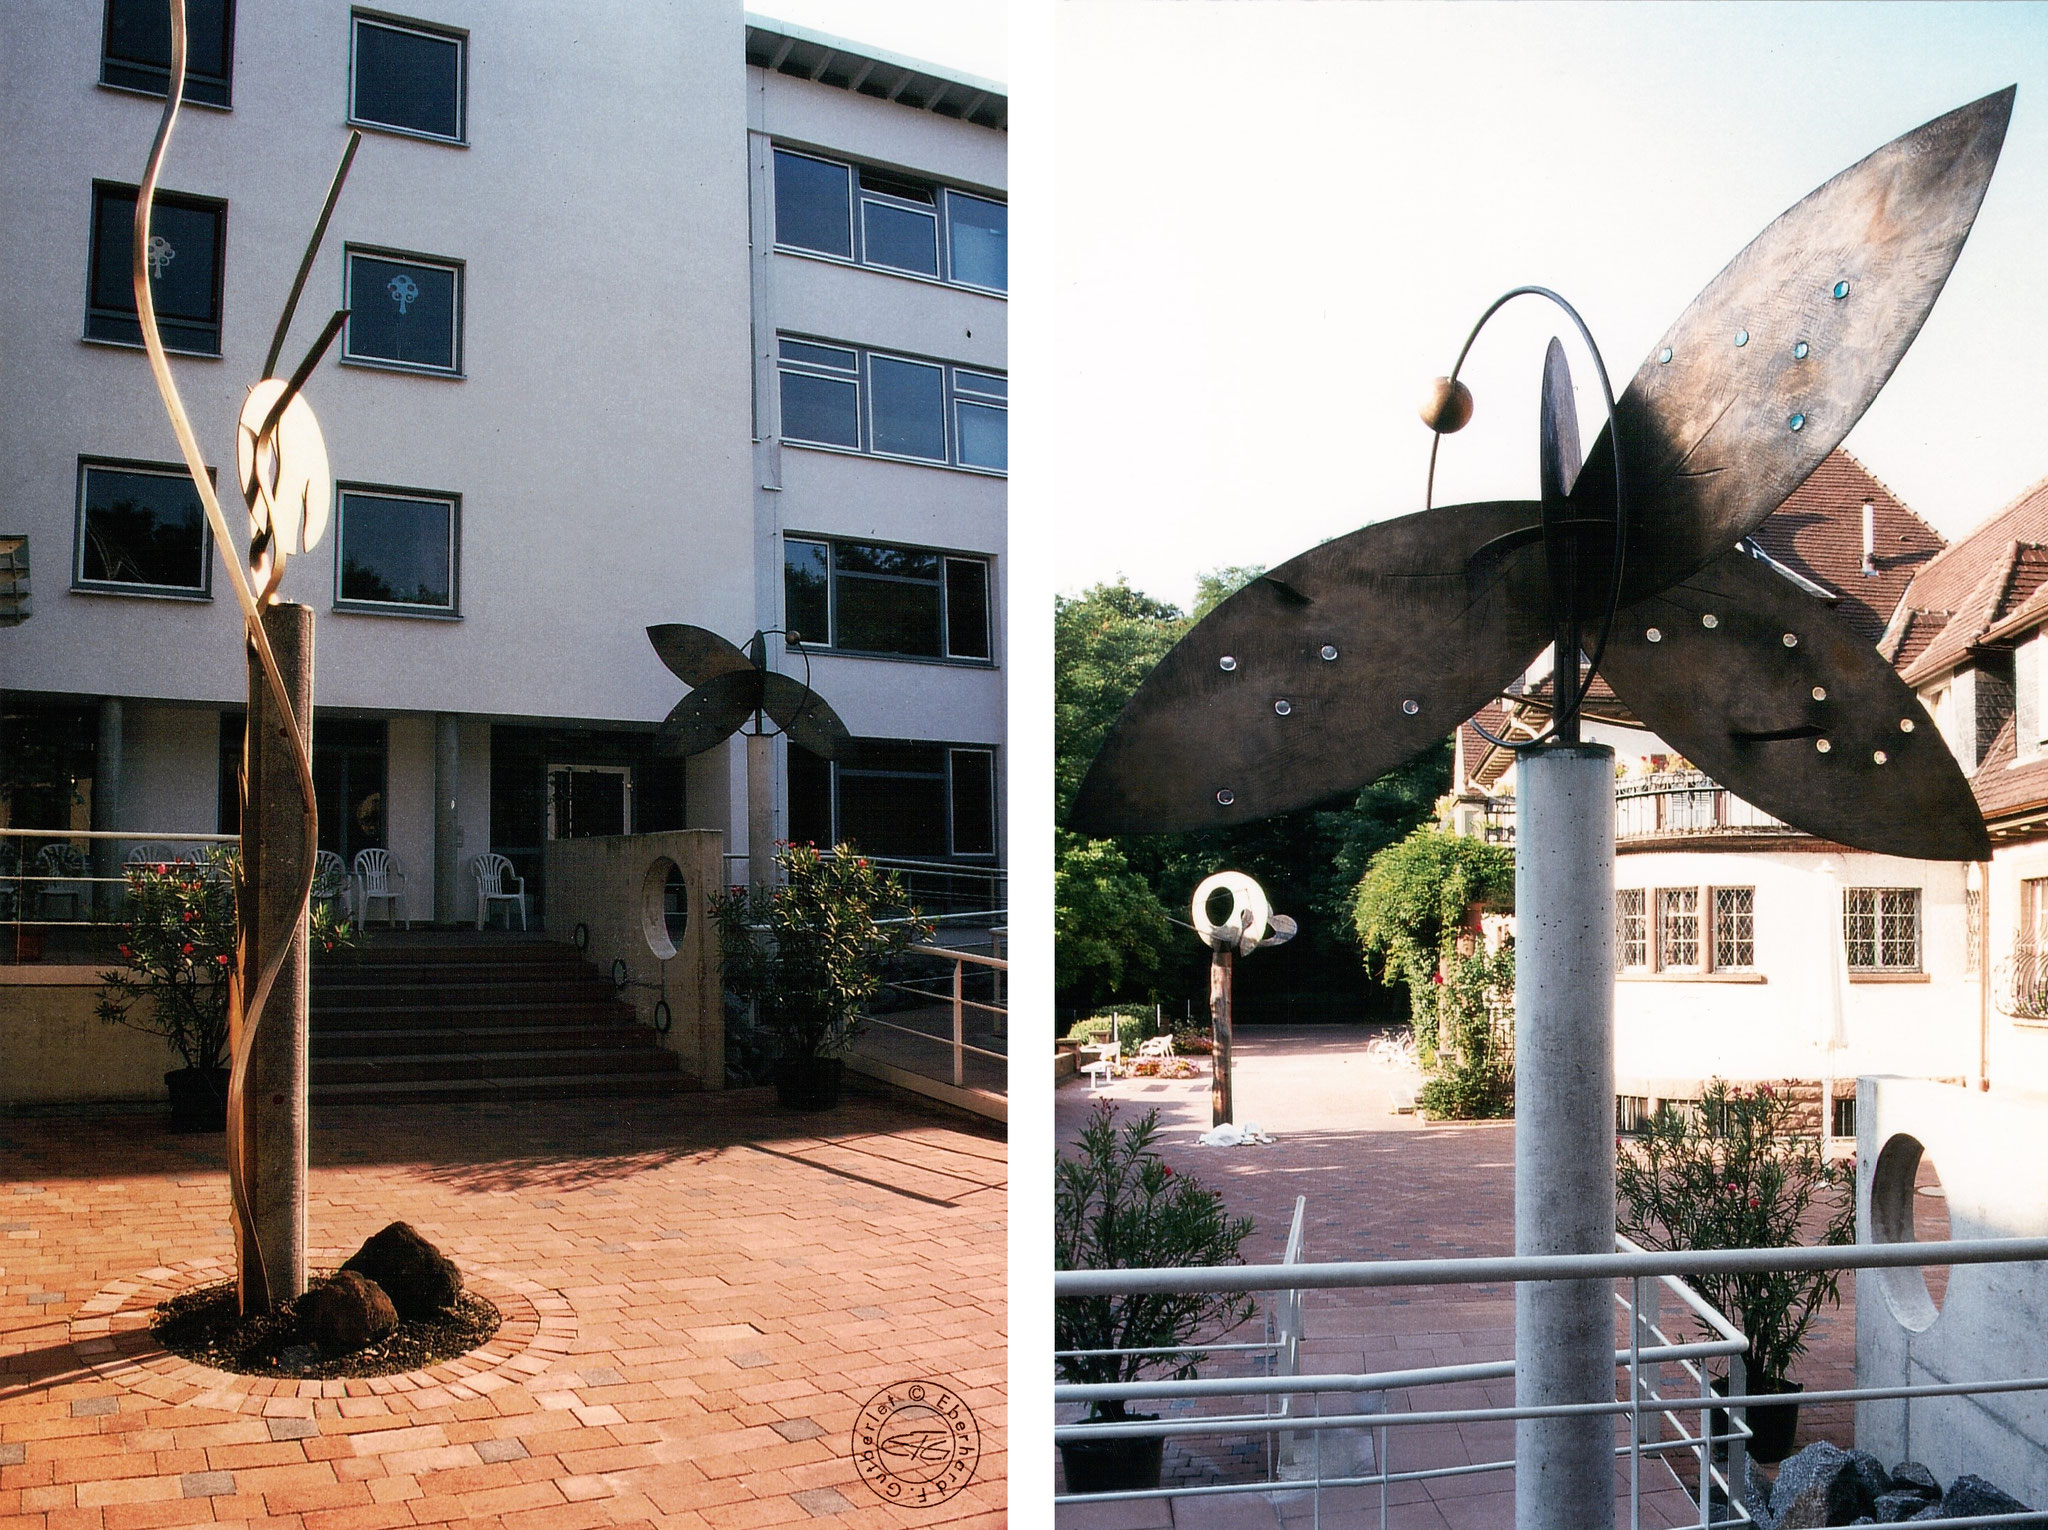 Altenpflegeheim St. Elisabeth, Caritasverband - Bensheim, 1994